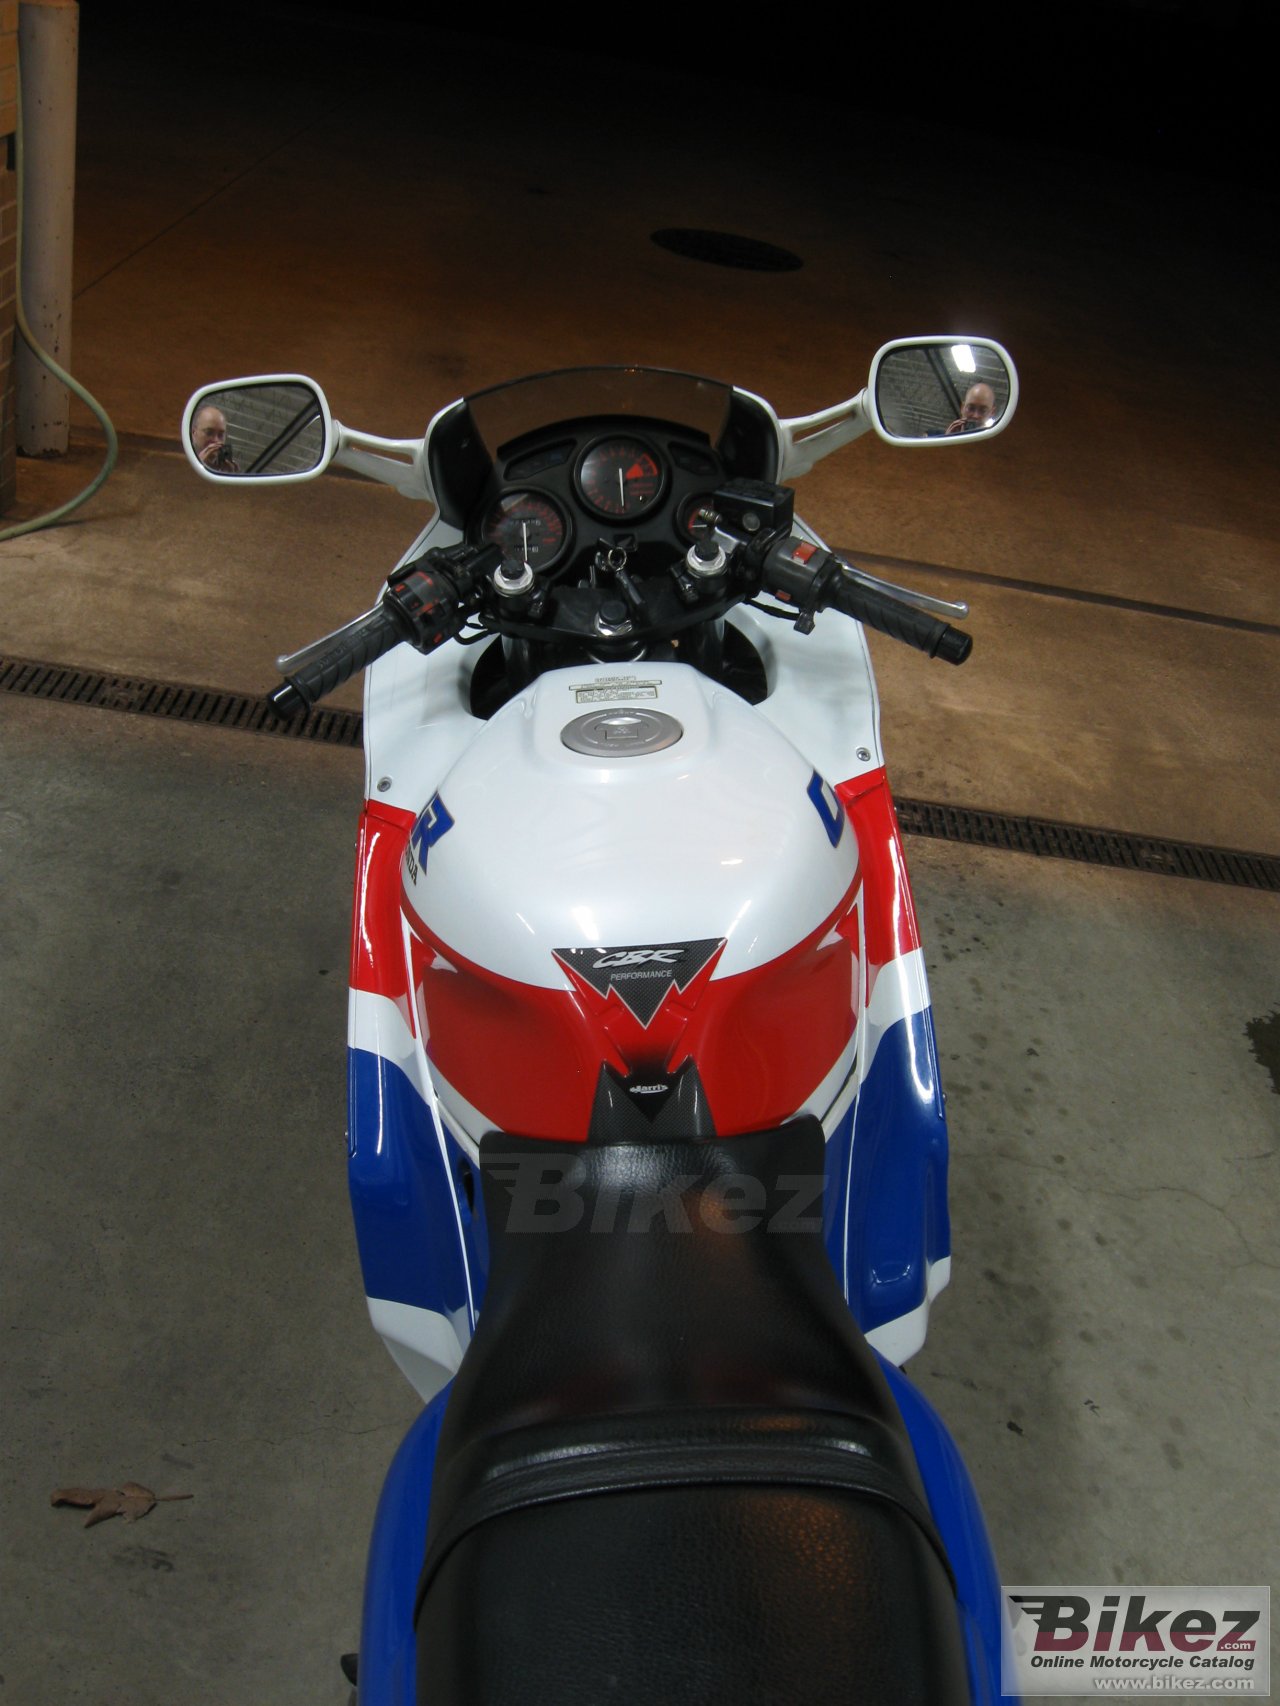 Honda CBR 600 F